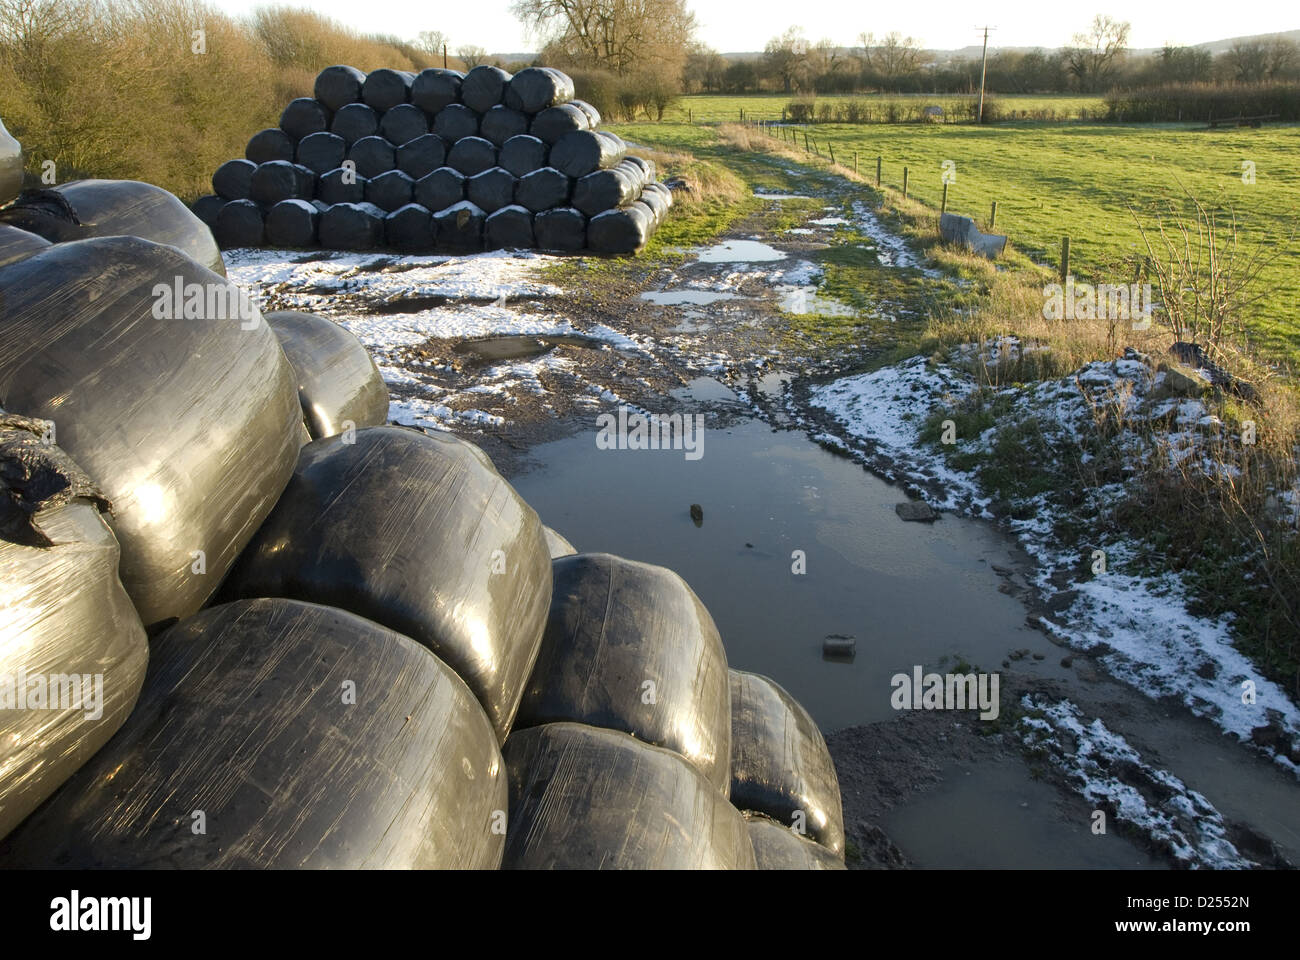 Des piles d'ensilage enrubannées noir sur l'eau boueuse, près de la voie agricole Wilstone, Hertfordshire, Angleterre, Décembre Banque D'Images